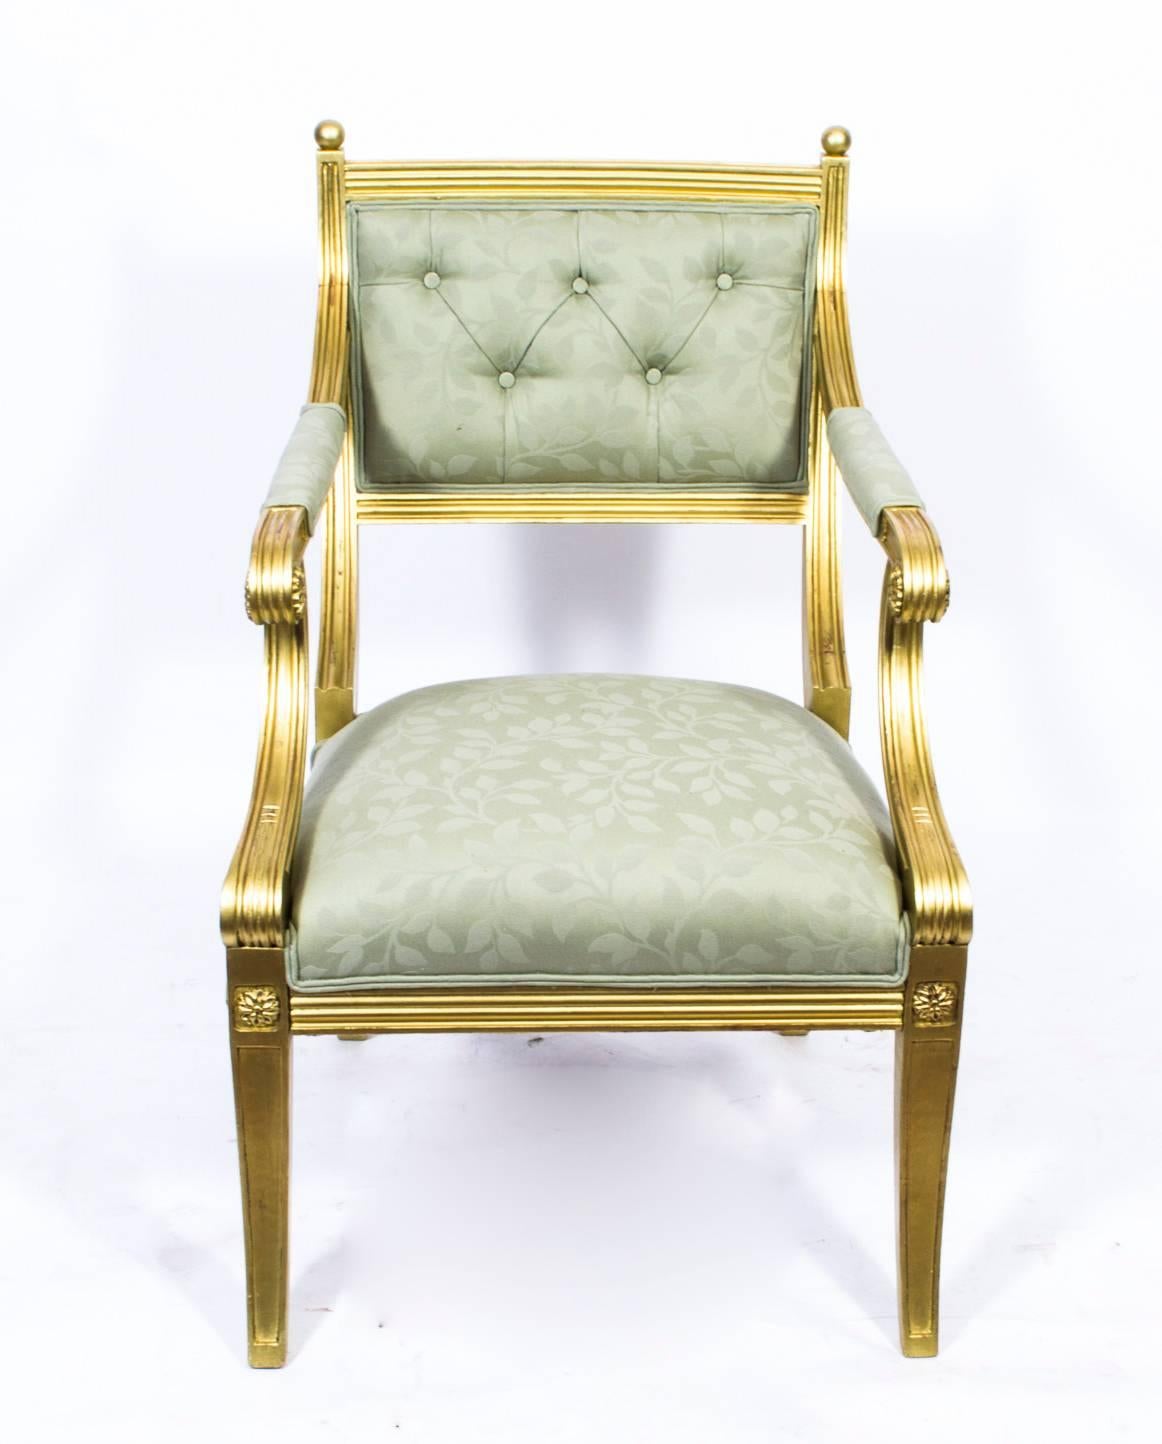 Il s'agit d'un magnifique fauteuil ancien en bois doré, dans le fabuleux style Regency, et datant du début du 20e siècle. 

La chaise dorée a été magnifiquement sculptée avec des lignes cannelées et des plaques en médaillon. Les accoudoirs et les